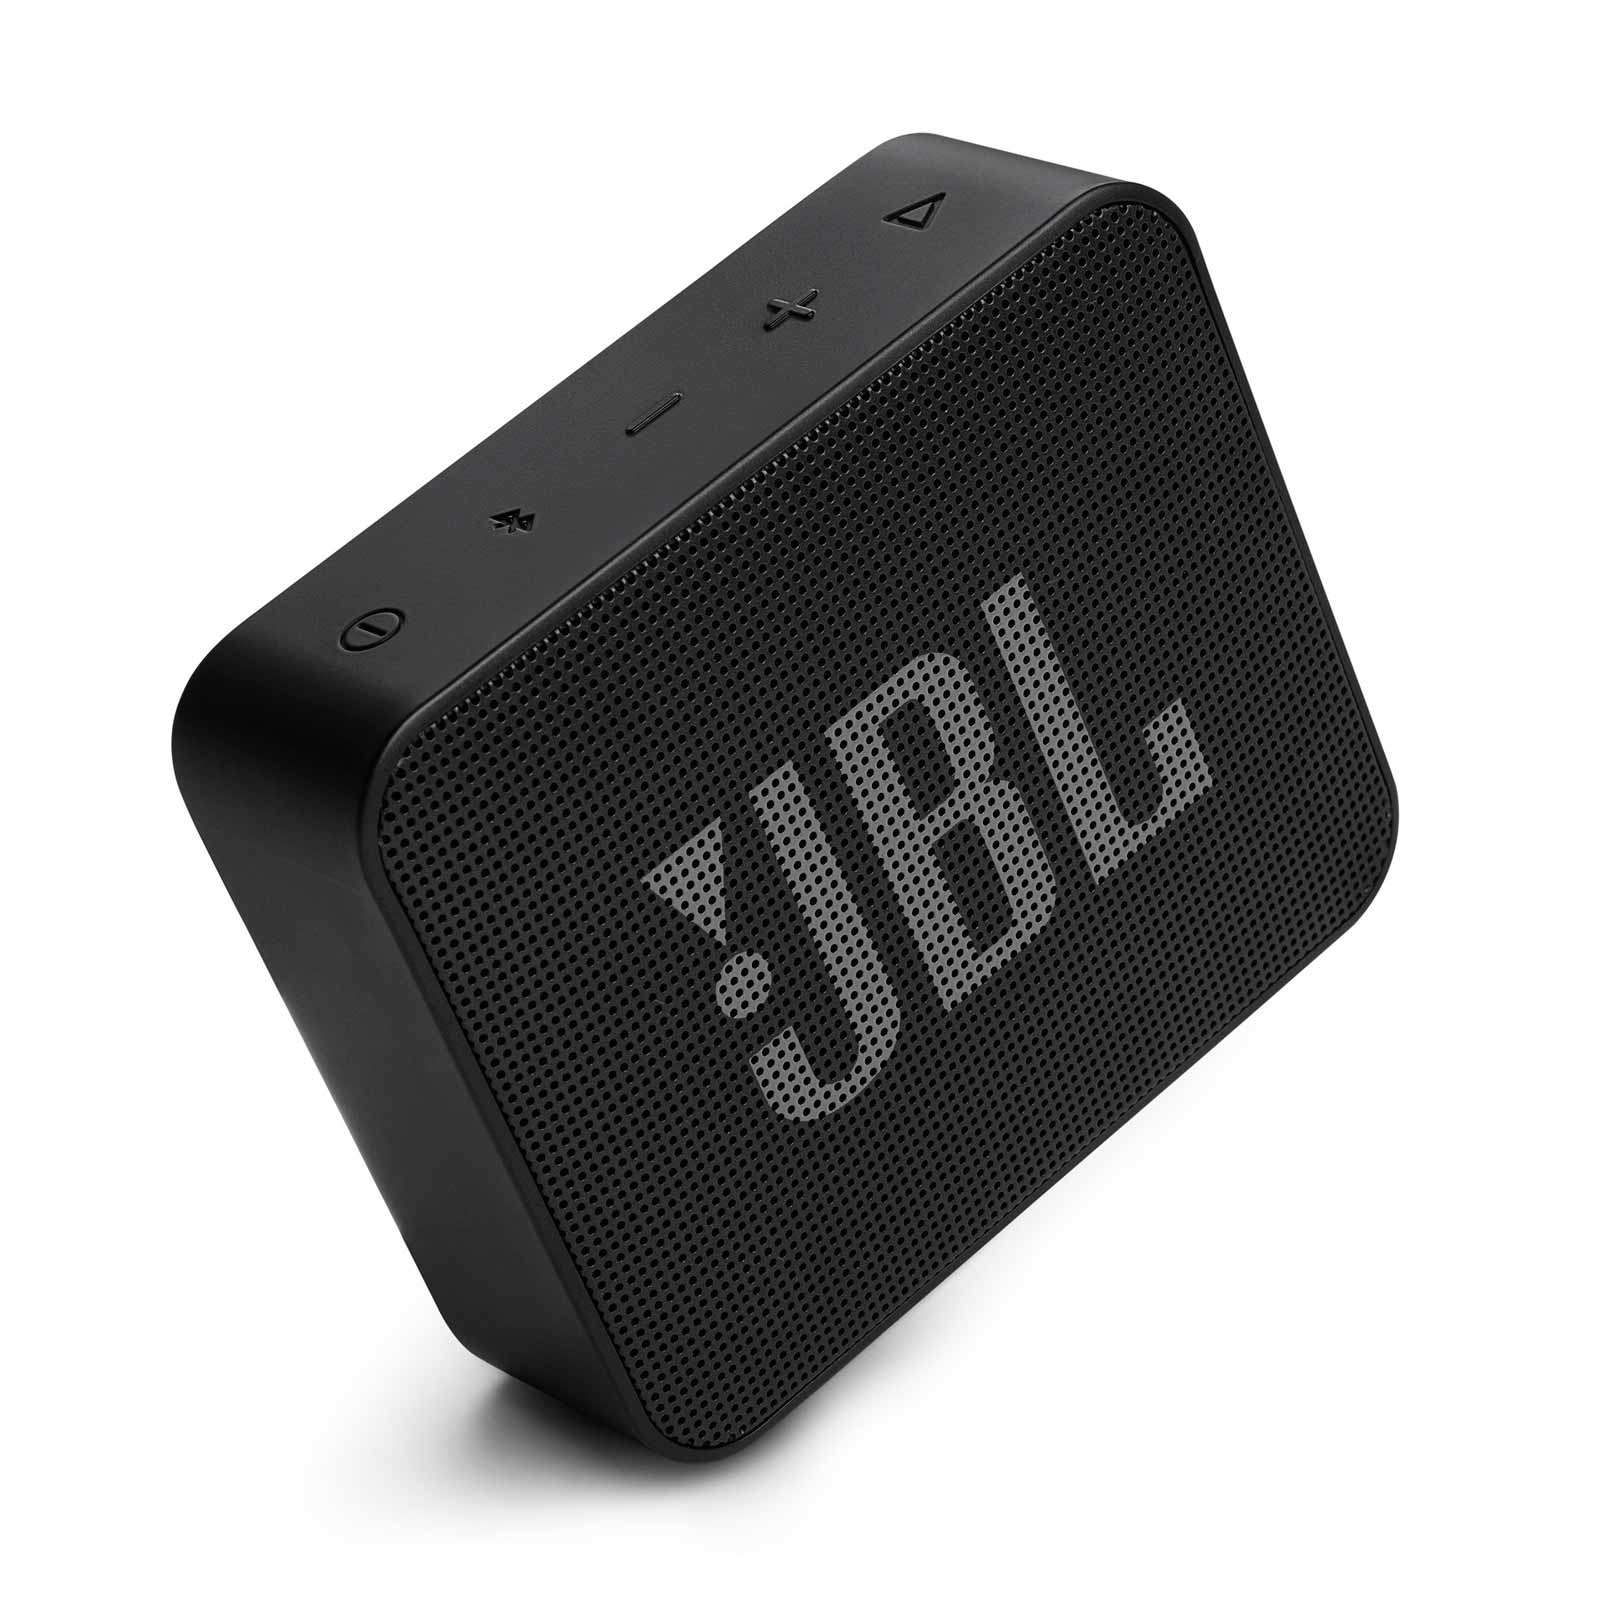 PARLANTE JBL BOOMBOX 2 – Tiendas de tecnología Shibuya